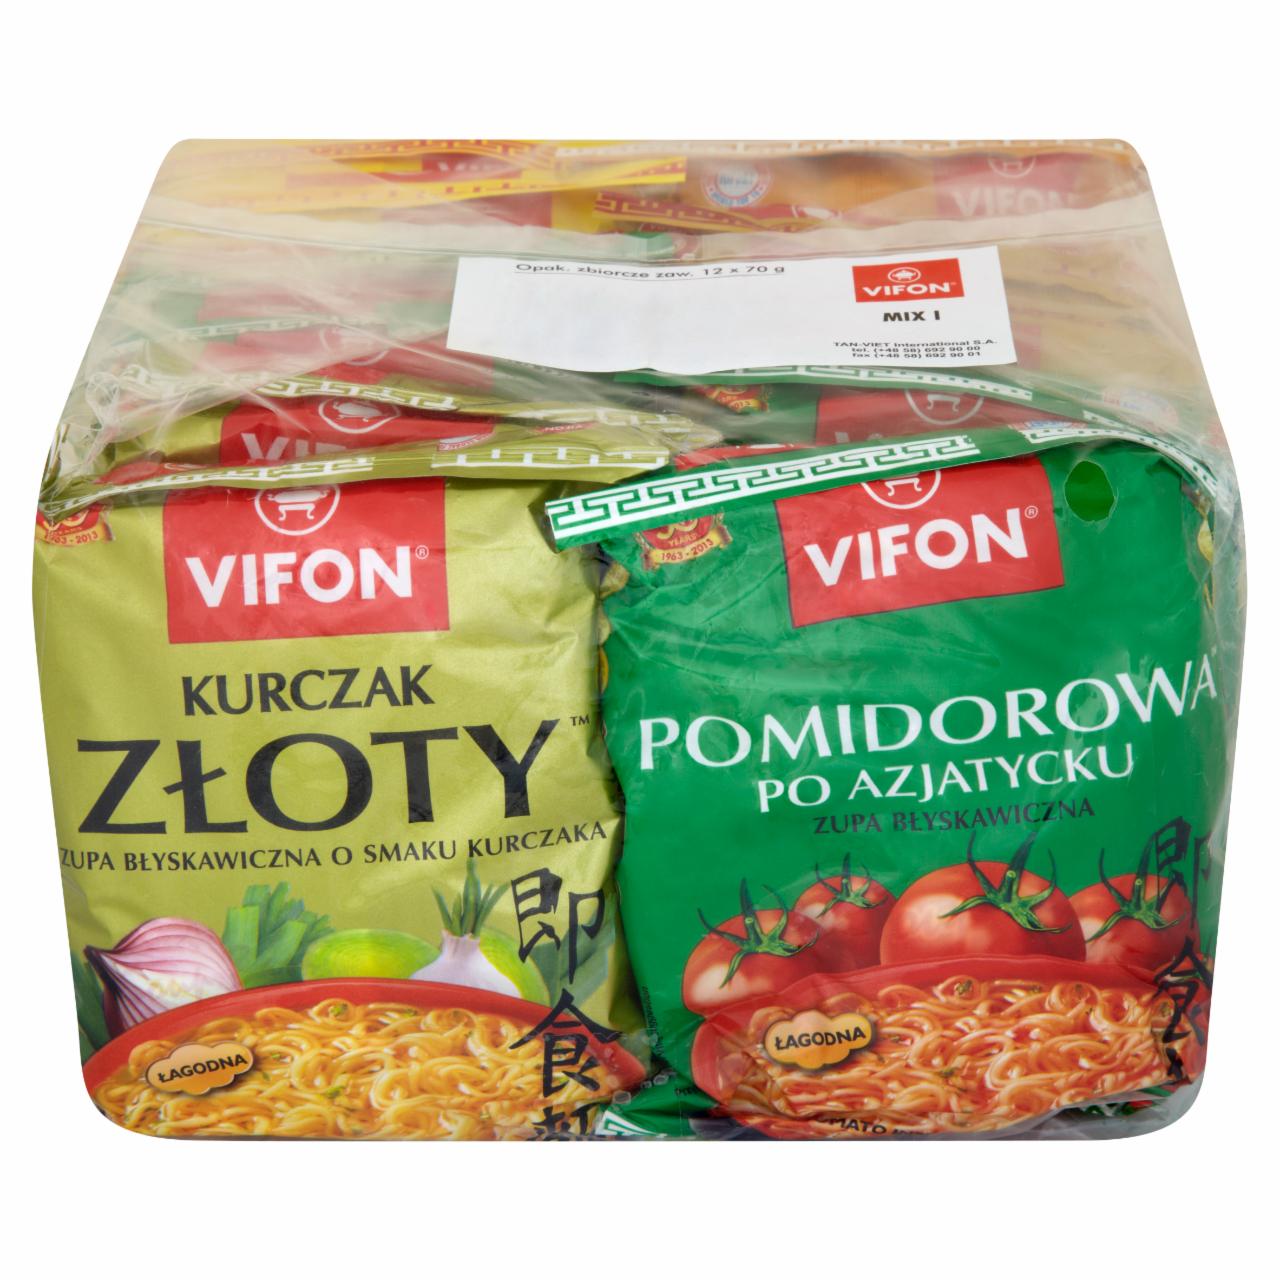 Zdjęcia - Vifon Mix smaków I Zupy błyskawiczne 12 x 70 g